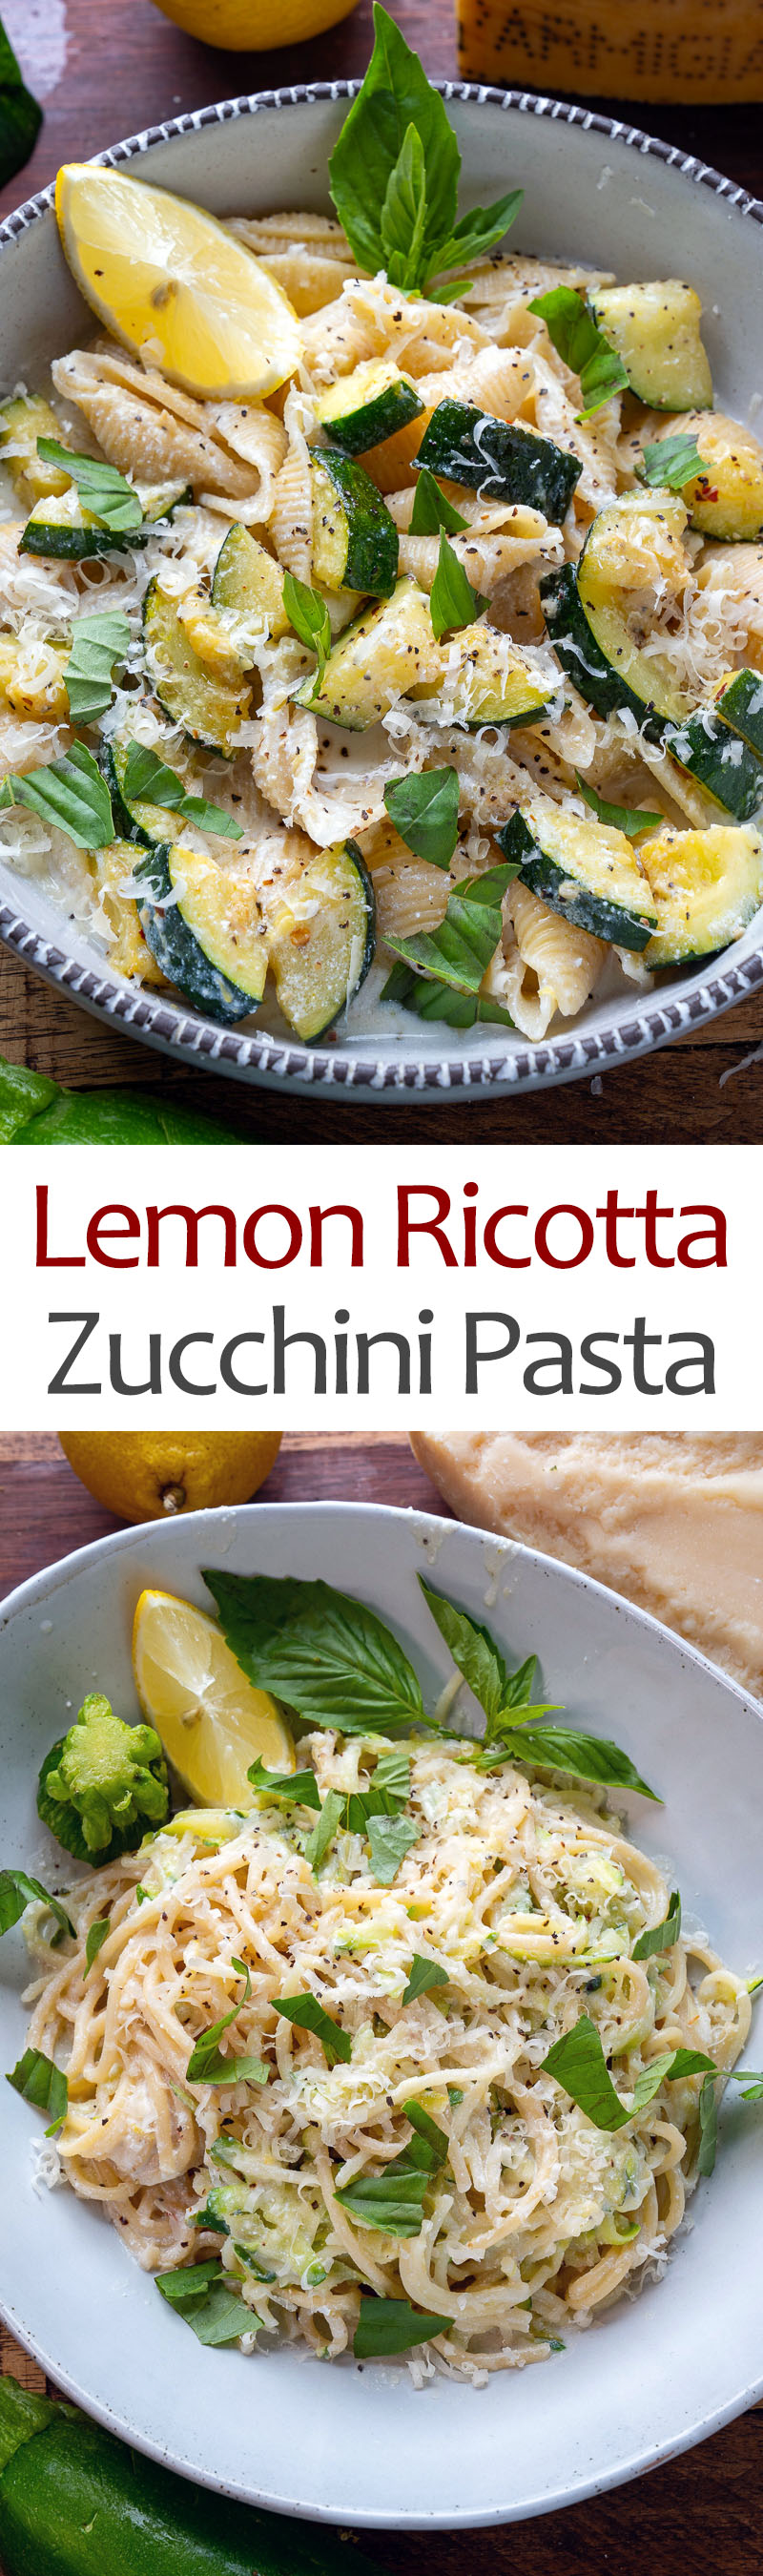 Lemon Ricotta Zucchini Pasta